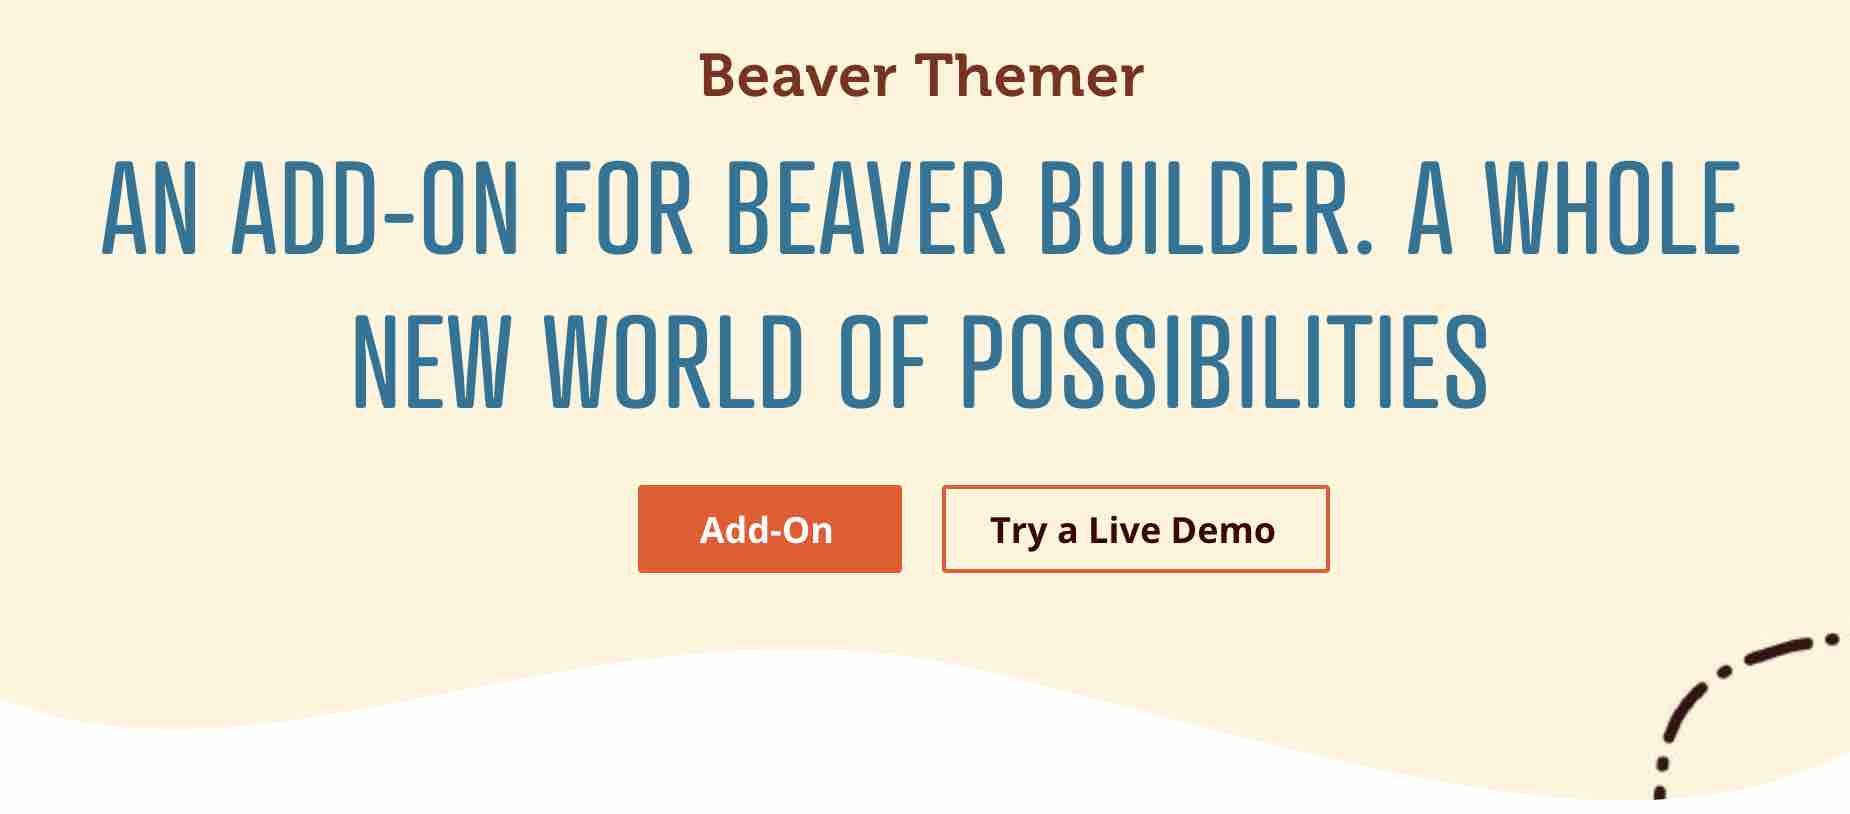 Beaver Themer est un add-on proposé par Beaver Builder.